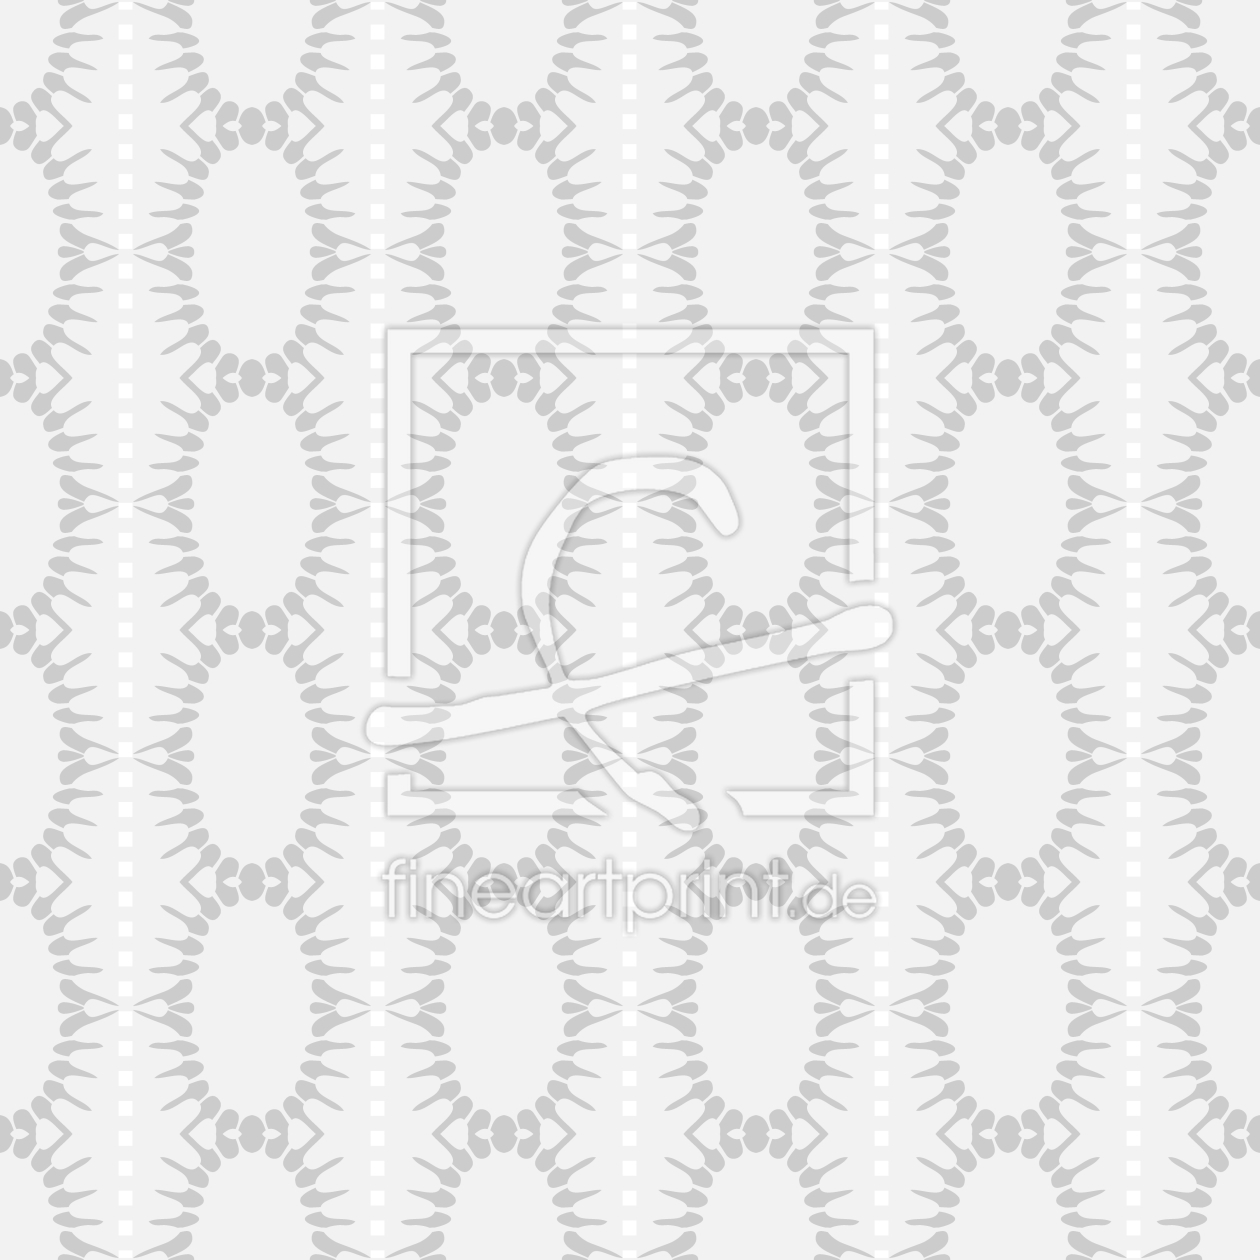 Bild-Nr.: 9008158 Ovale In Streifen erstellt von patterndesigns-com